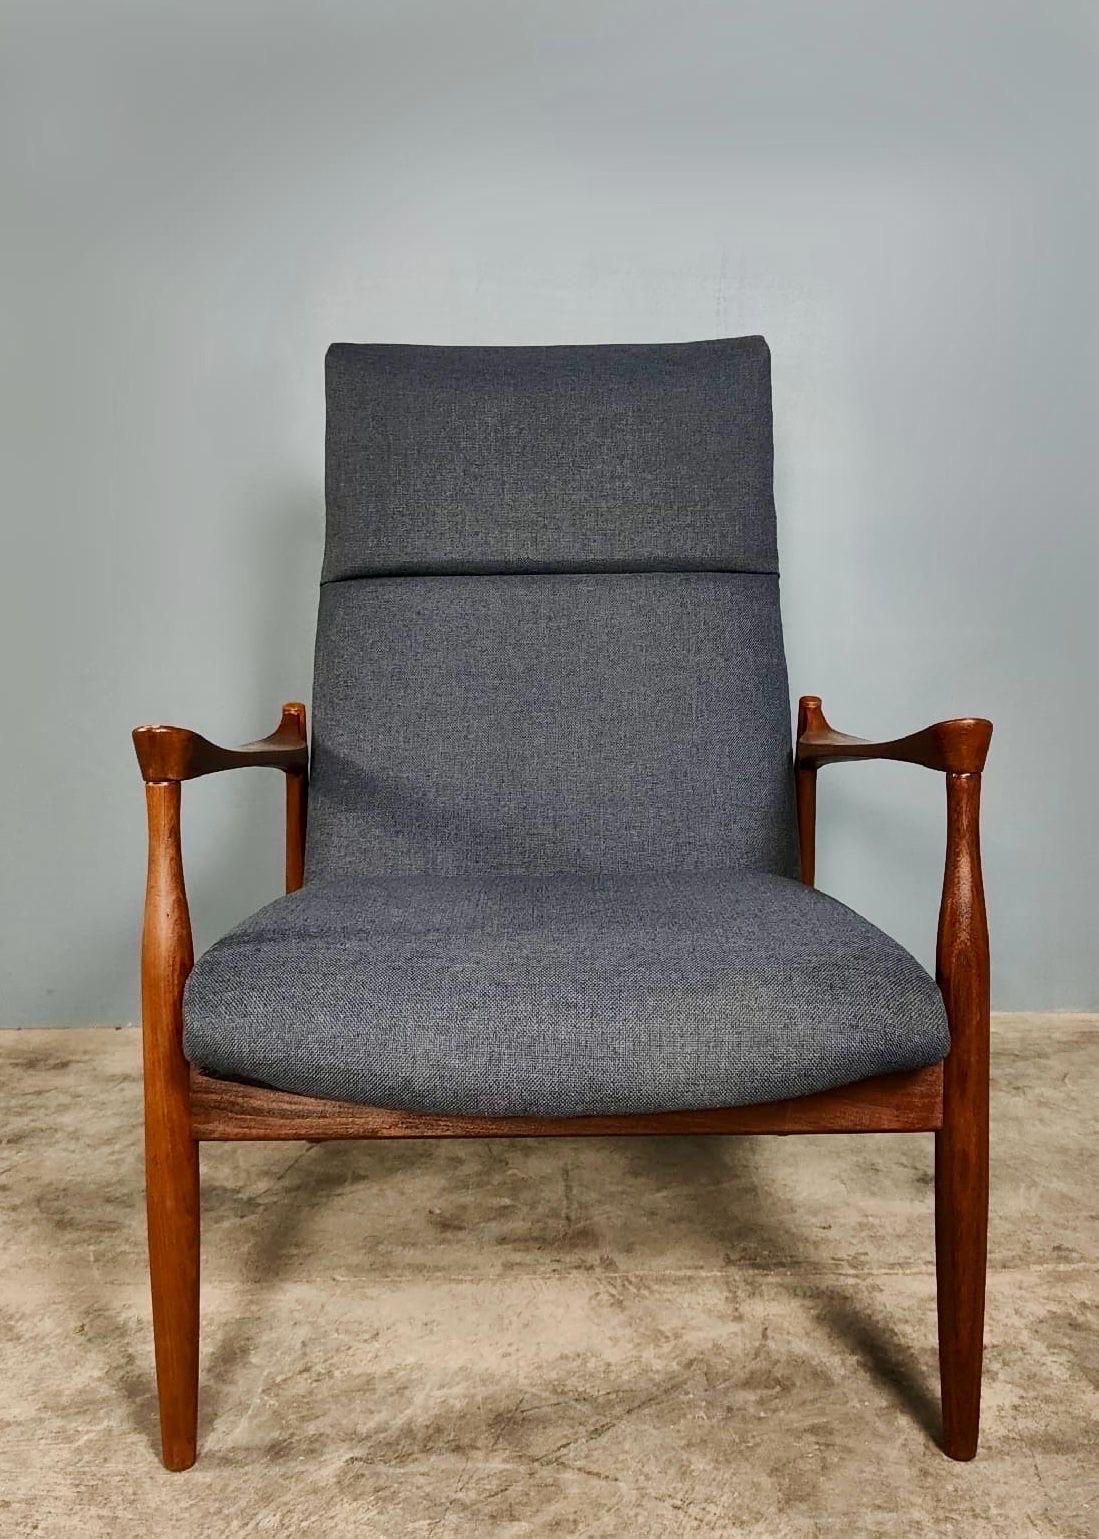 Teak Kofod Larsen G Plan Danish Range Afromosia 6249 Lounge Chair 6244 Sofa Bed Retro For Sale